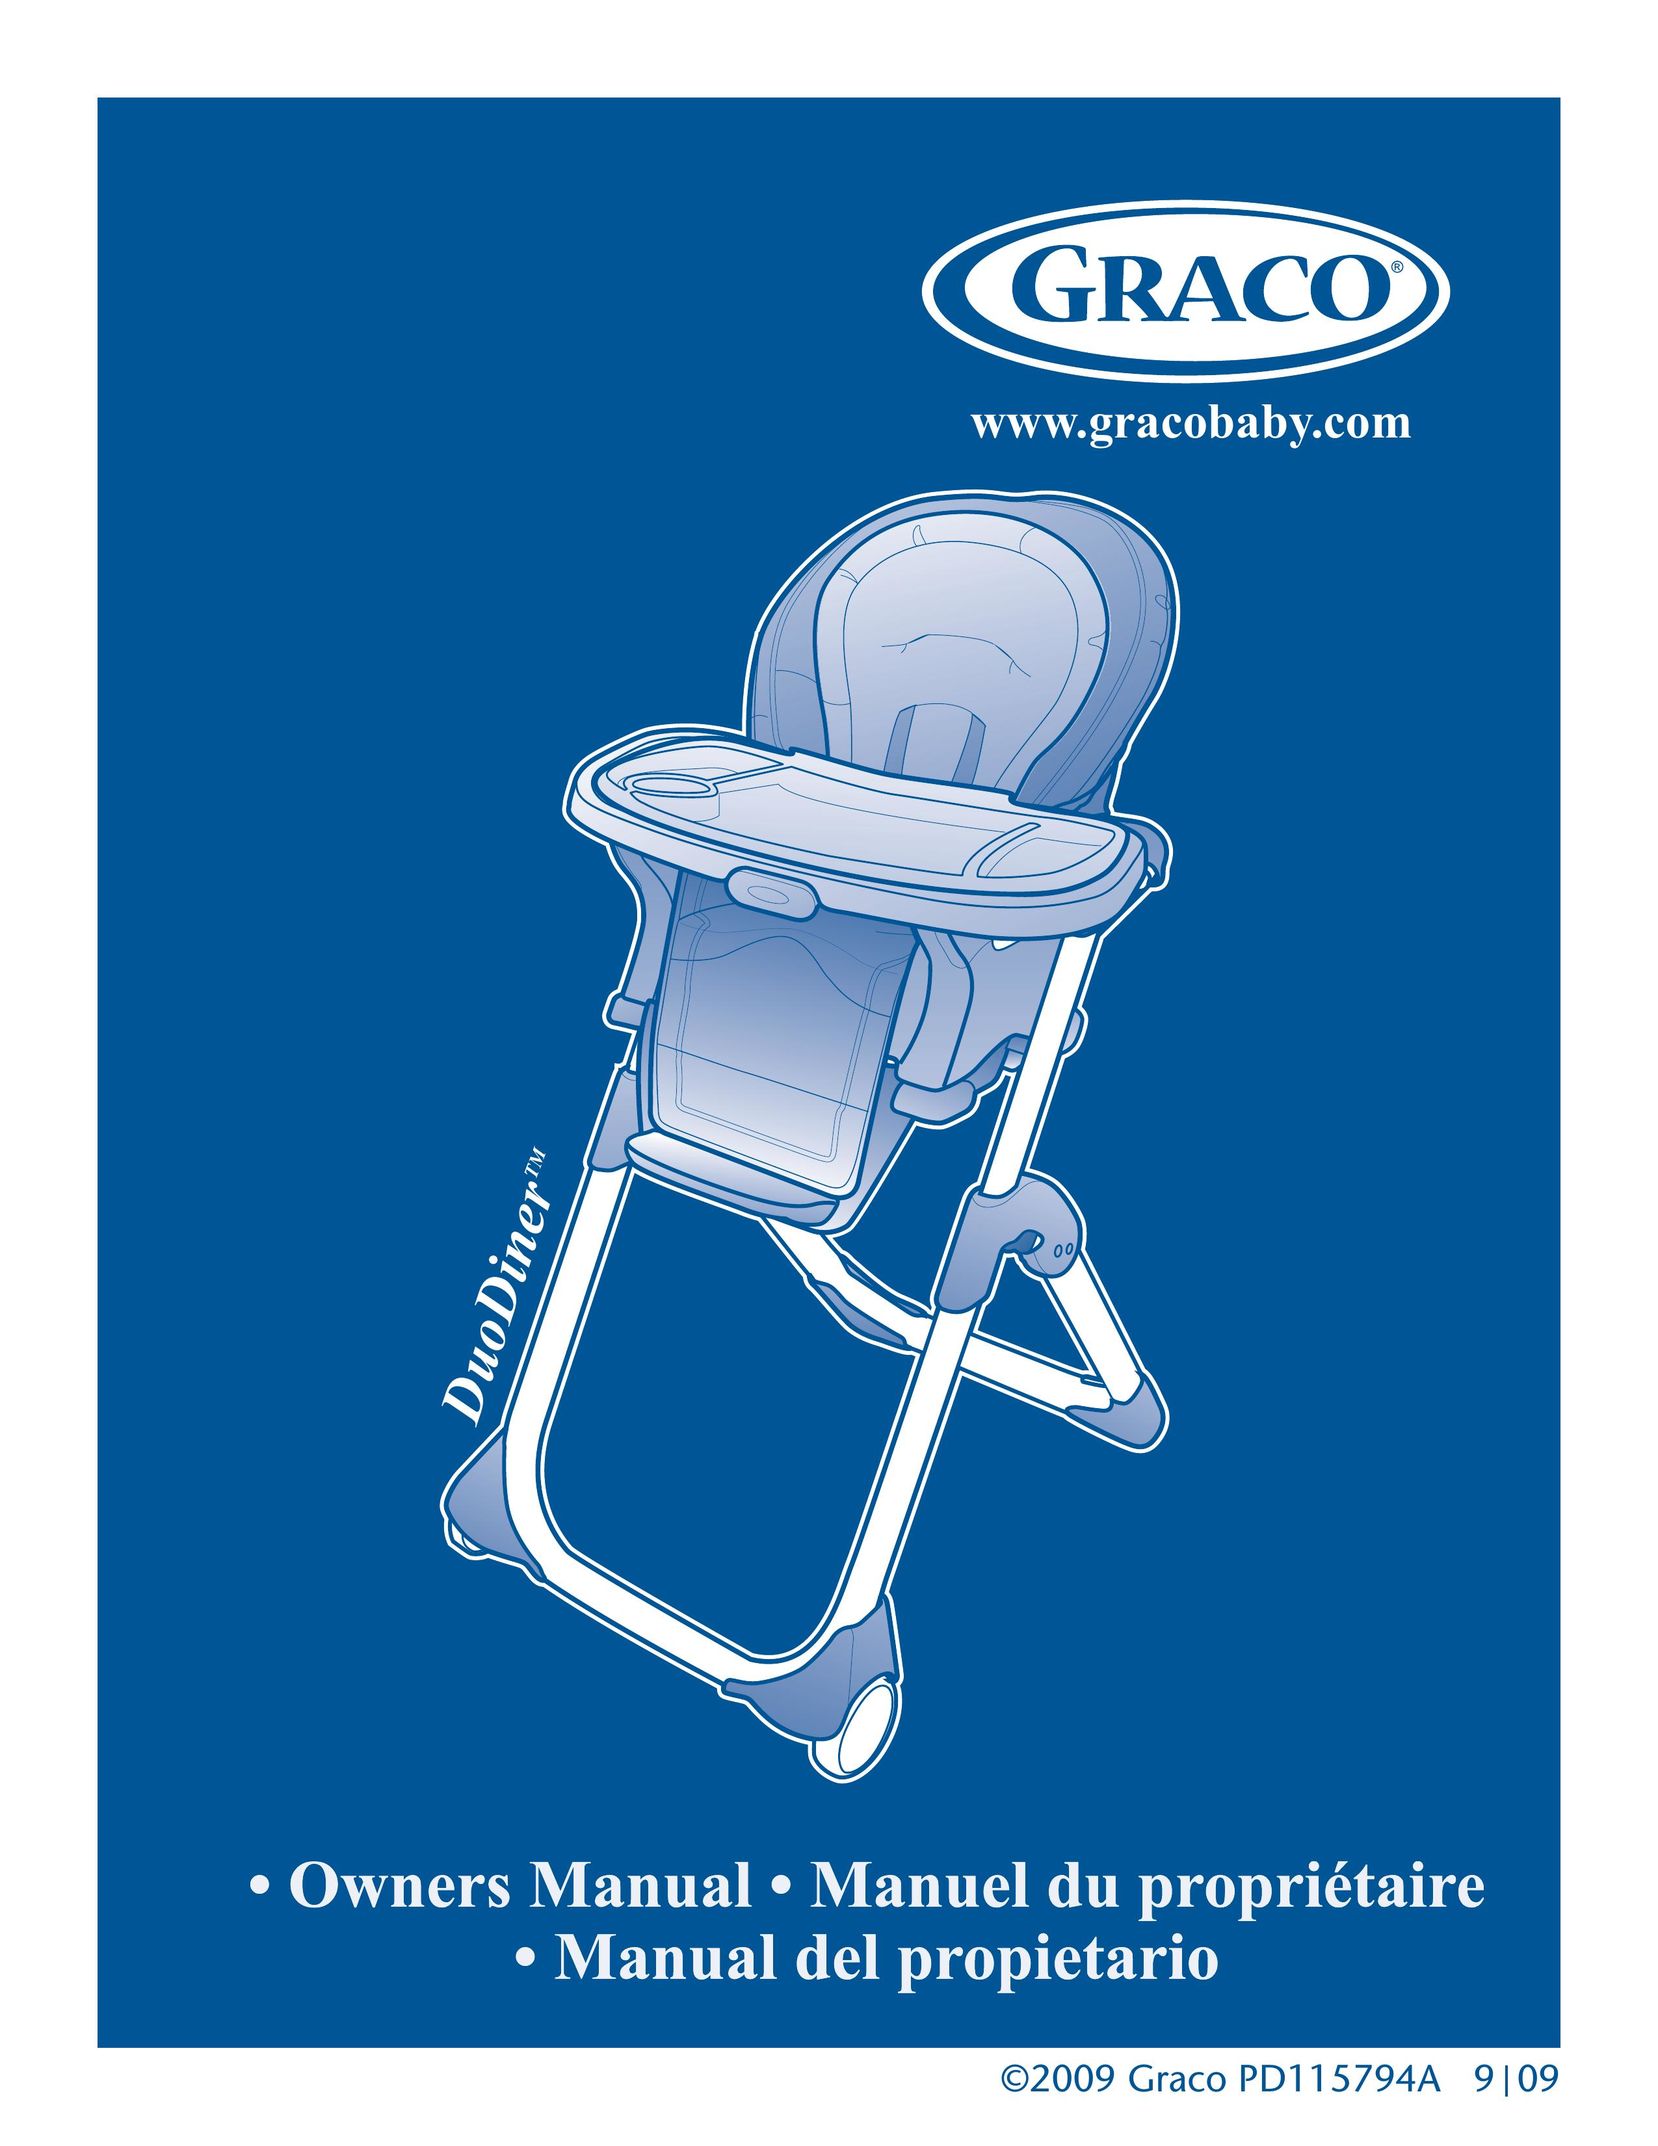 Graco 1762134 High Chair User Manual